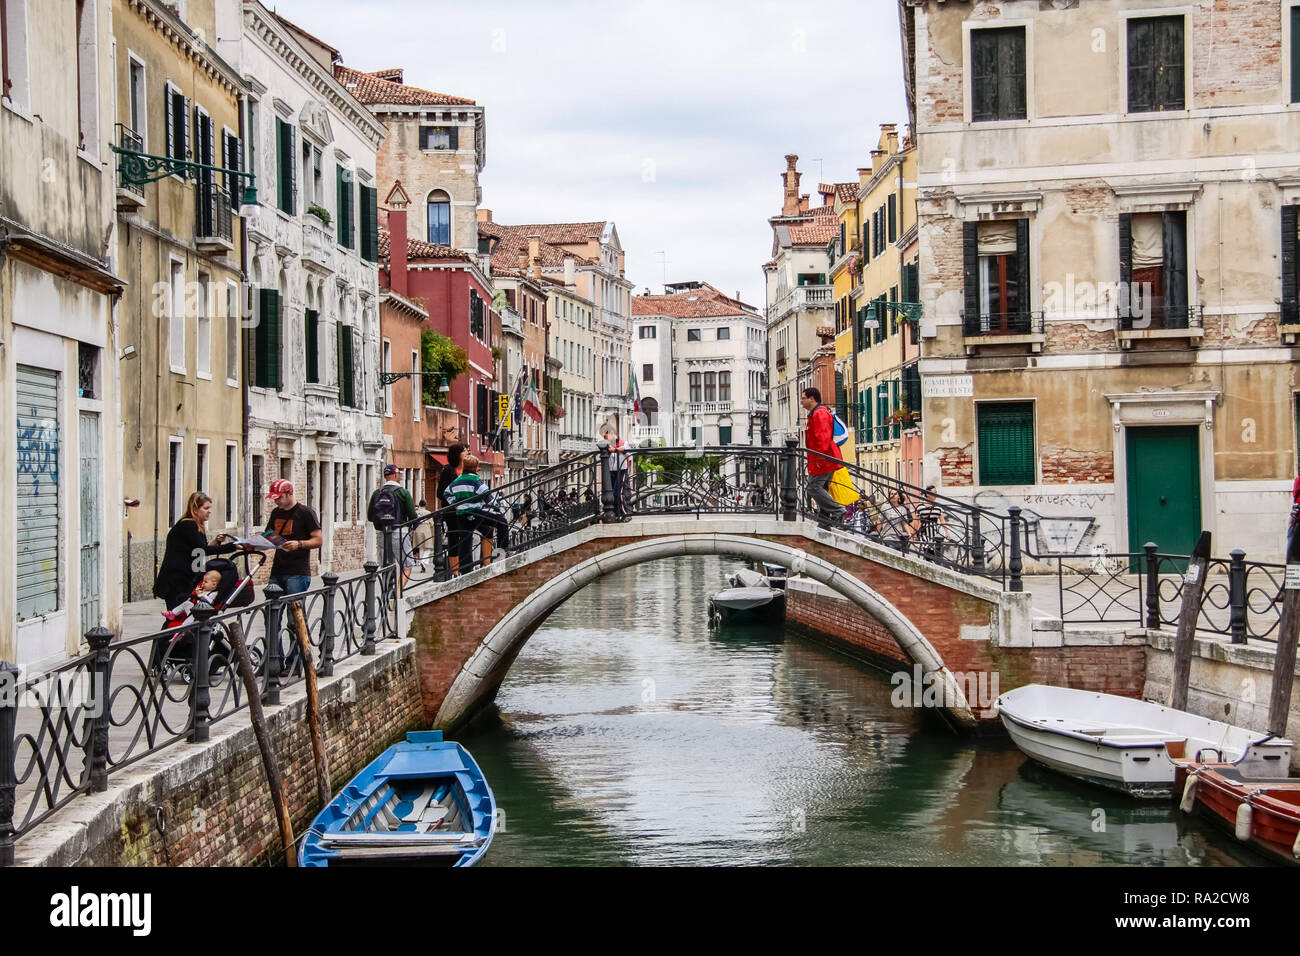 Venezia, Italia - 29 Maggio 2016: Venezia in Italia, l'architettura della città di Venezia è una destinazione turistica popolare dell'Europa. Foto Stock